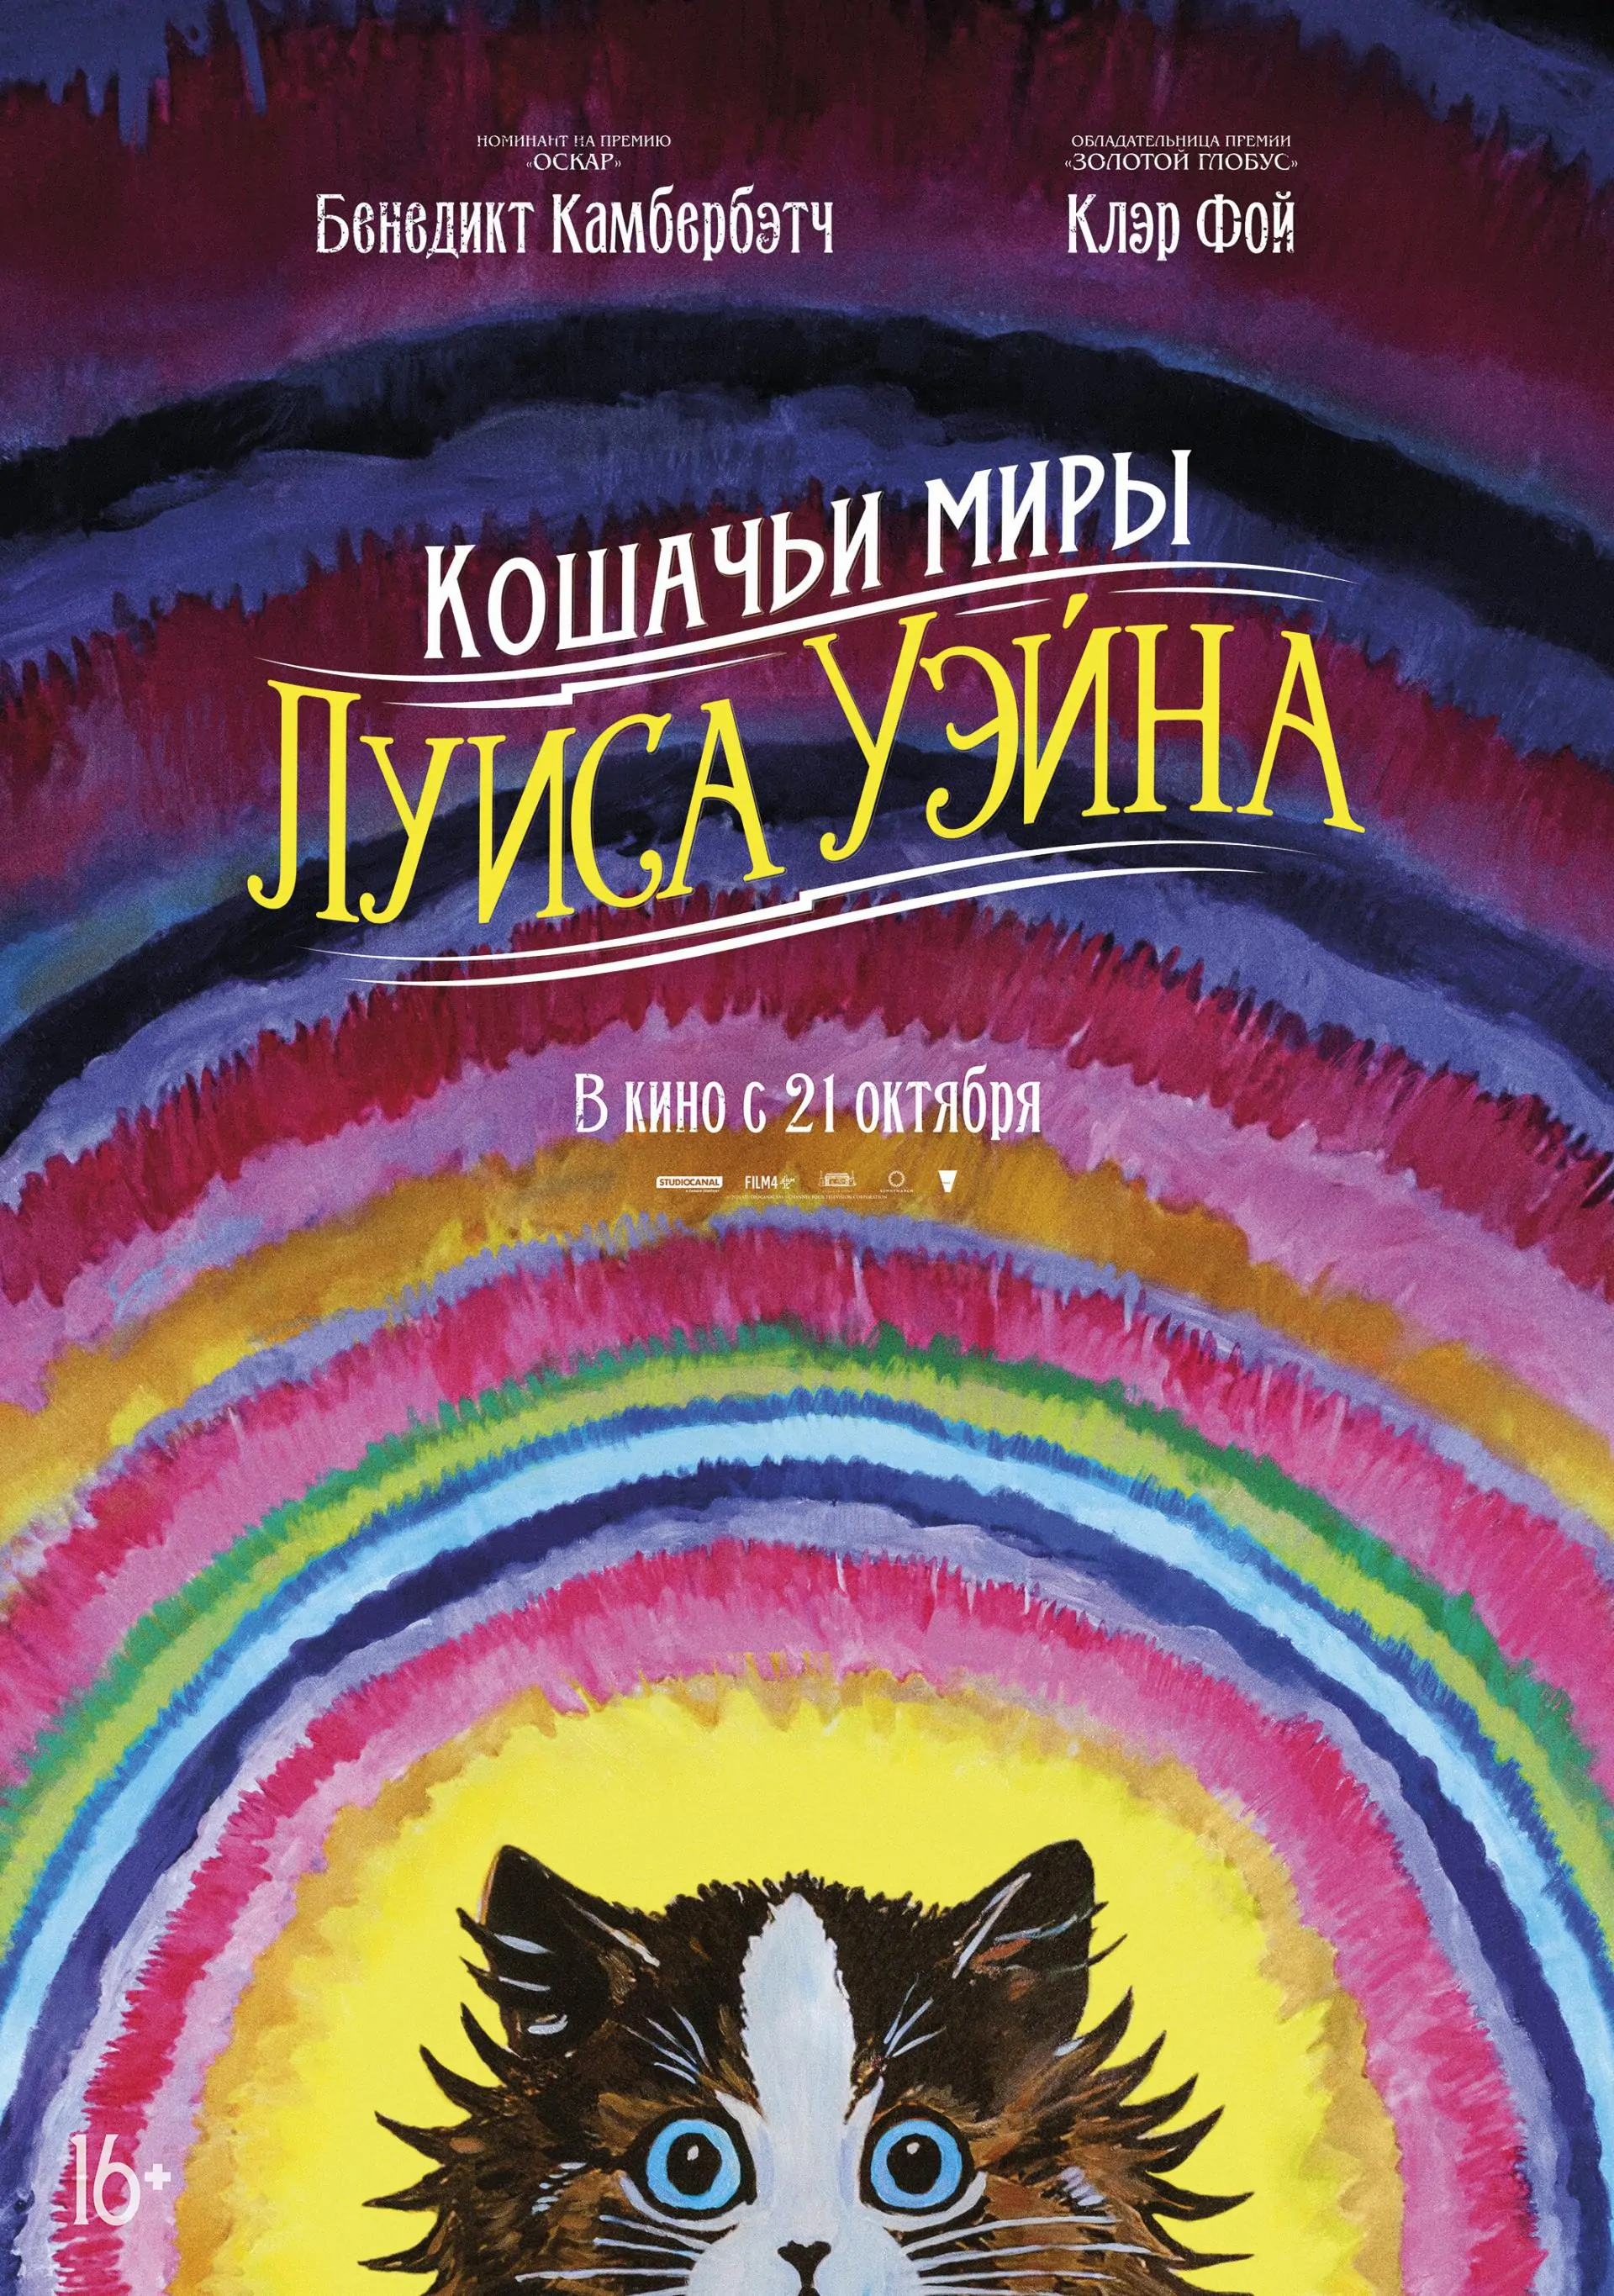 Постер фильма «Кошачьи миры Луиса Уэйна»/«Вольга»